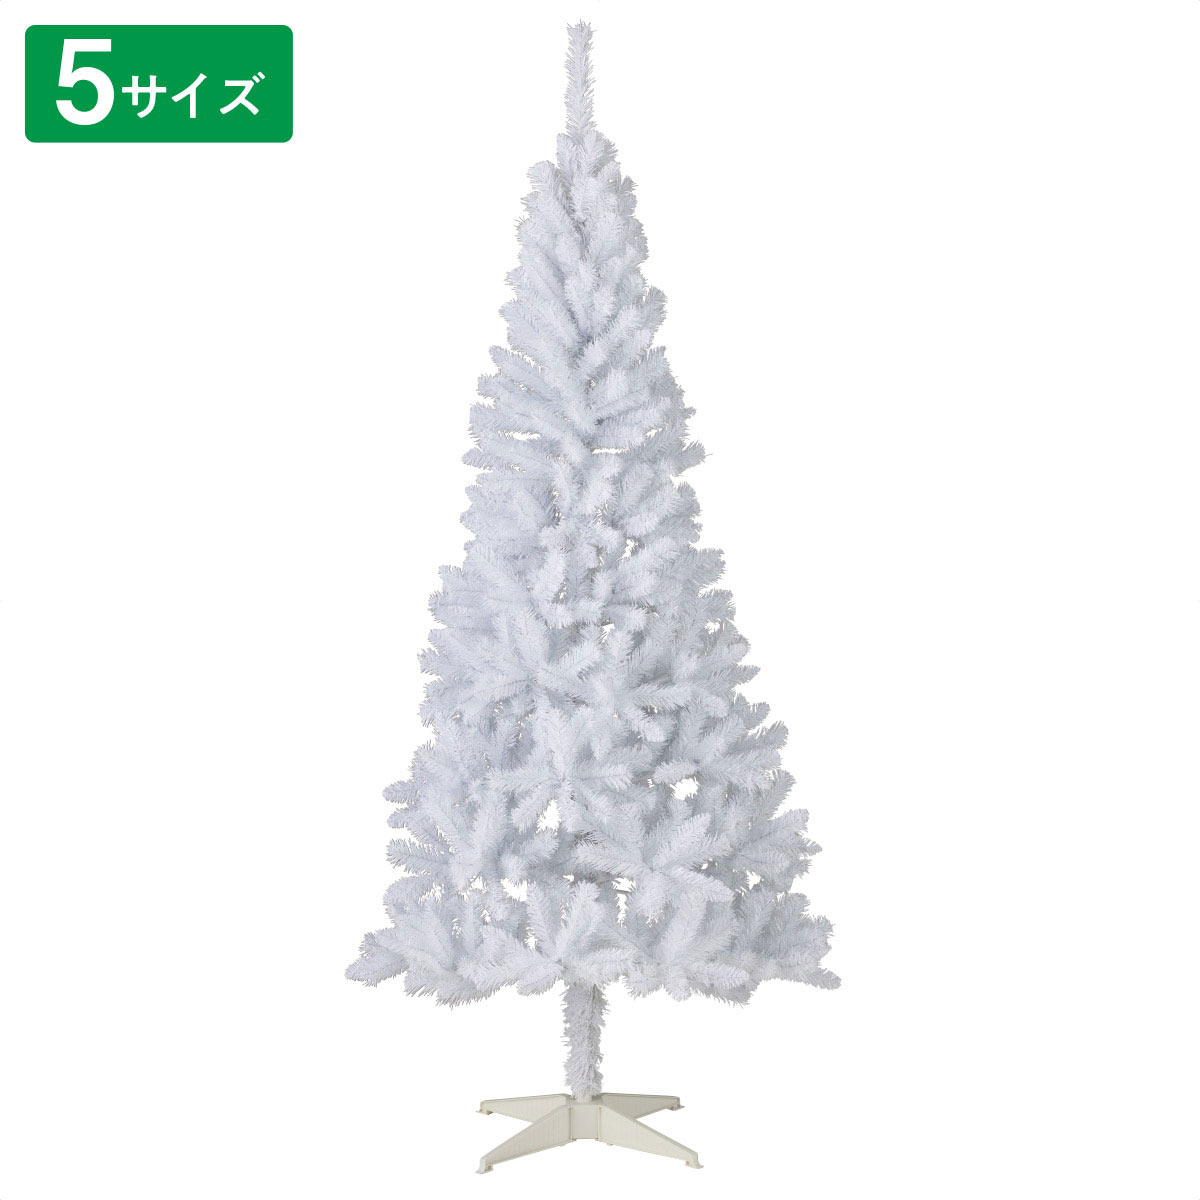 240cmクリスマスツリー(ホワイトツリー) - 2